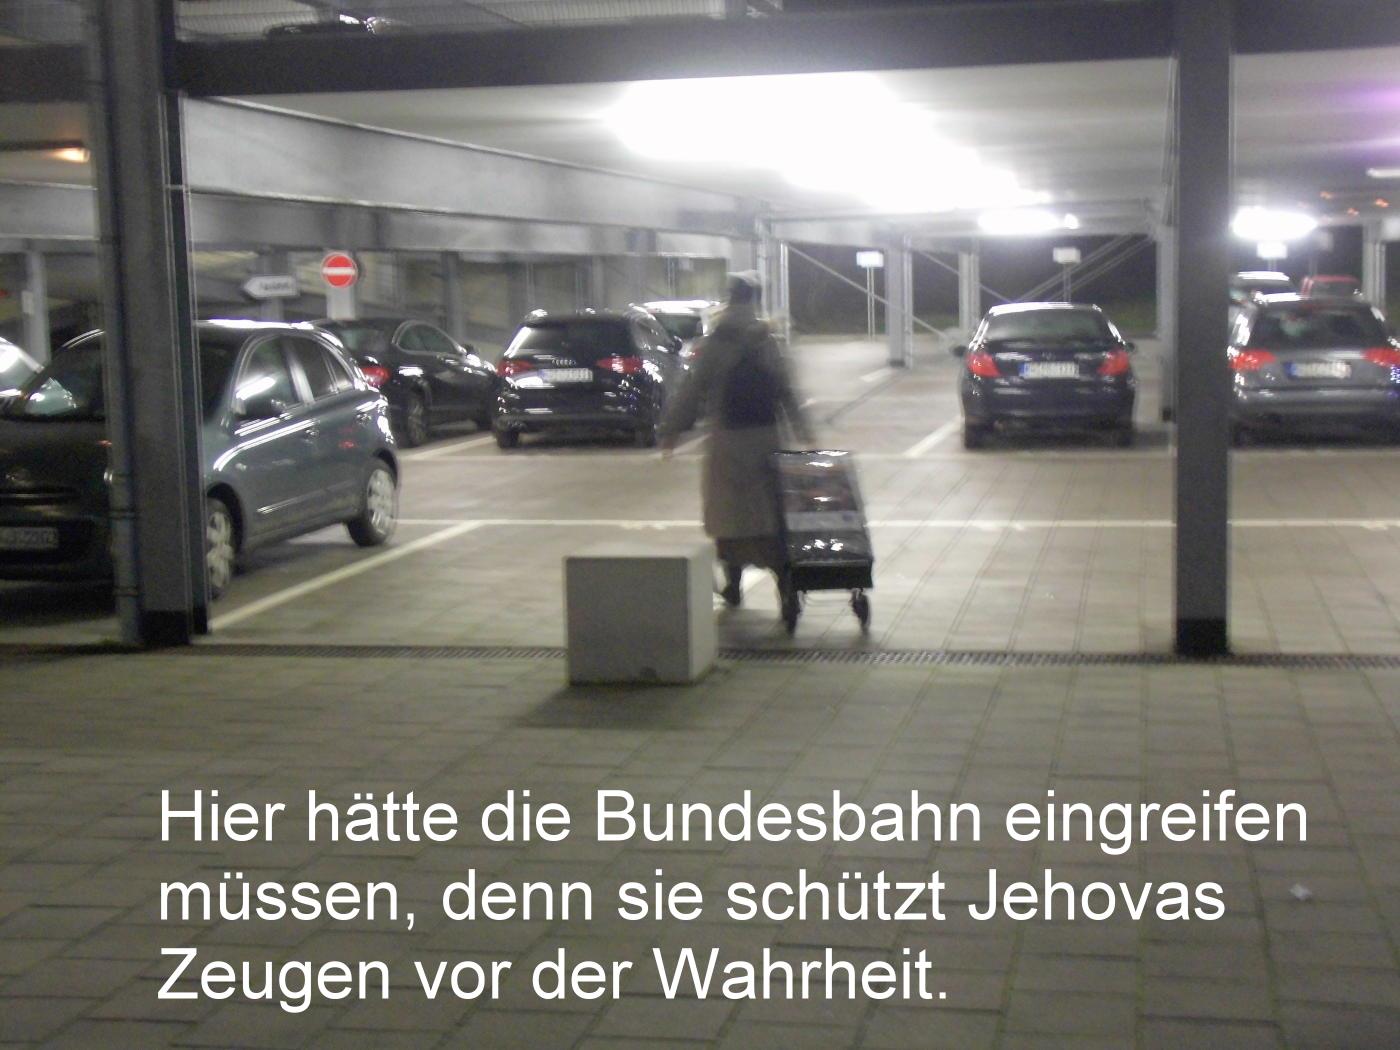 Jehovas Verblutungsmord auf leisen Sohlen – Deutschland ist Faschisten-Schutzgebiet